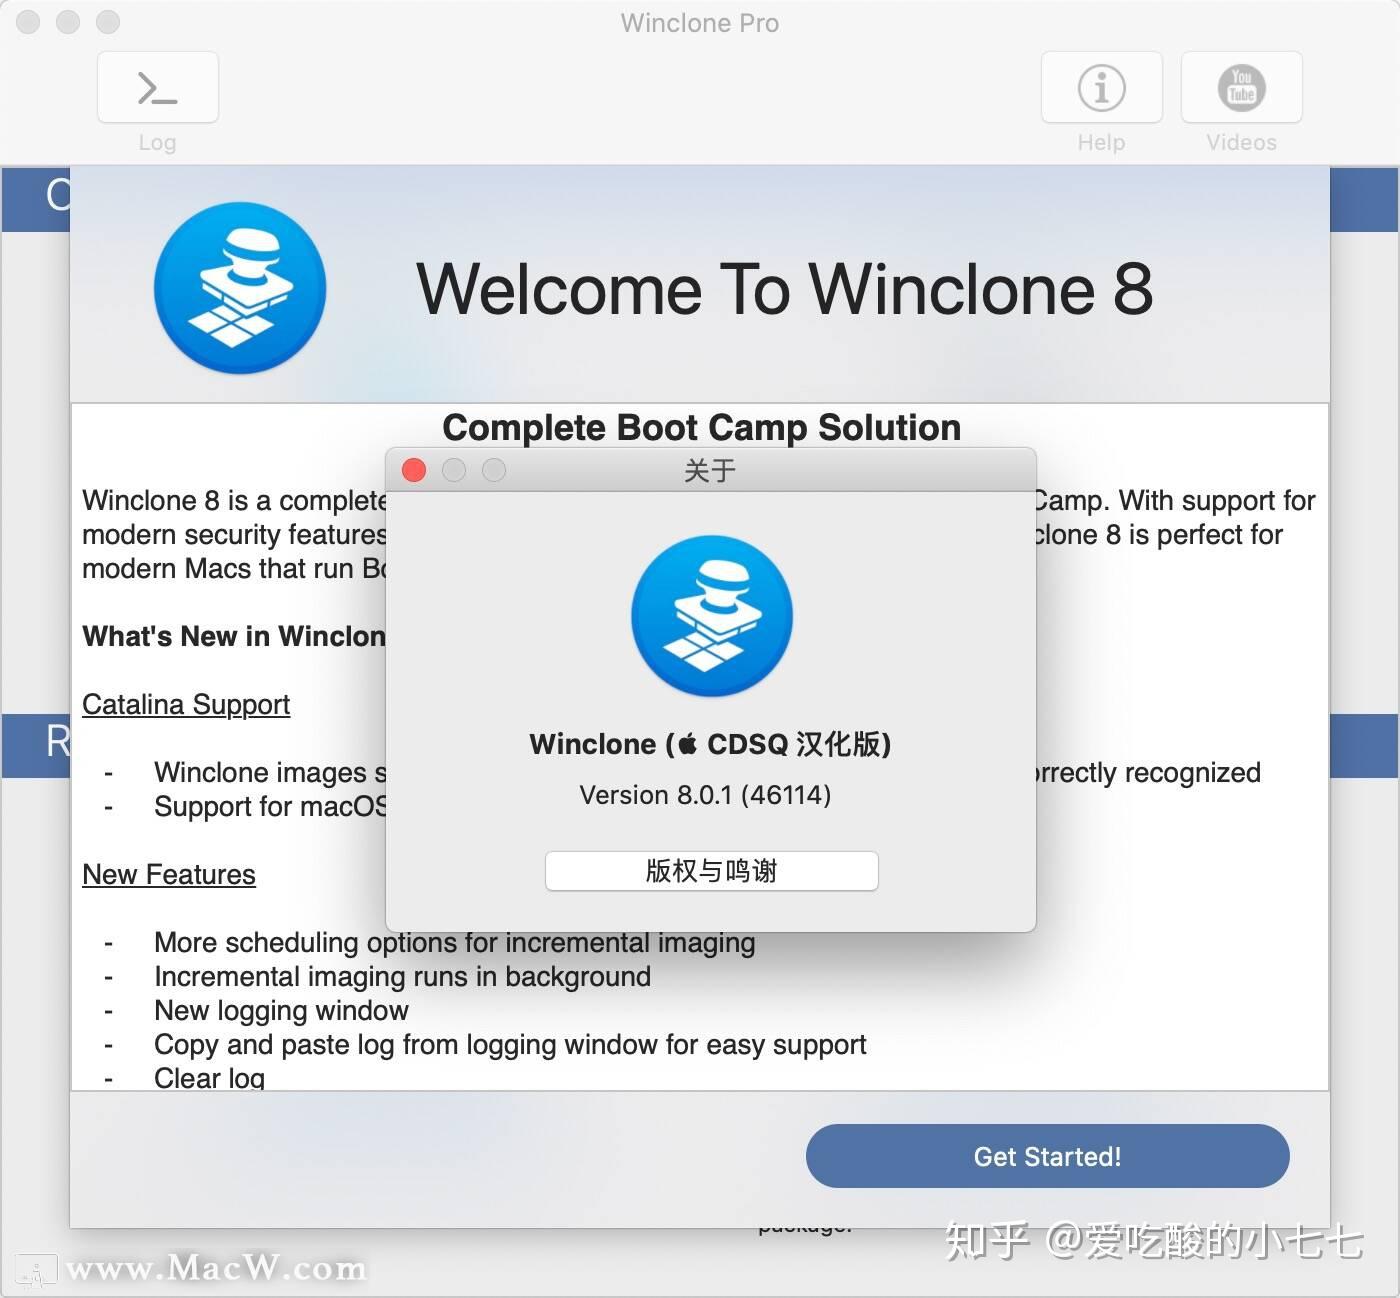 instal Winclone Pro